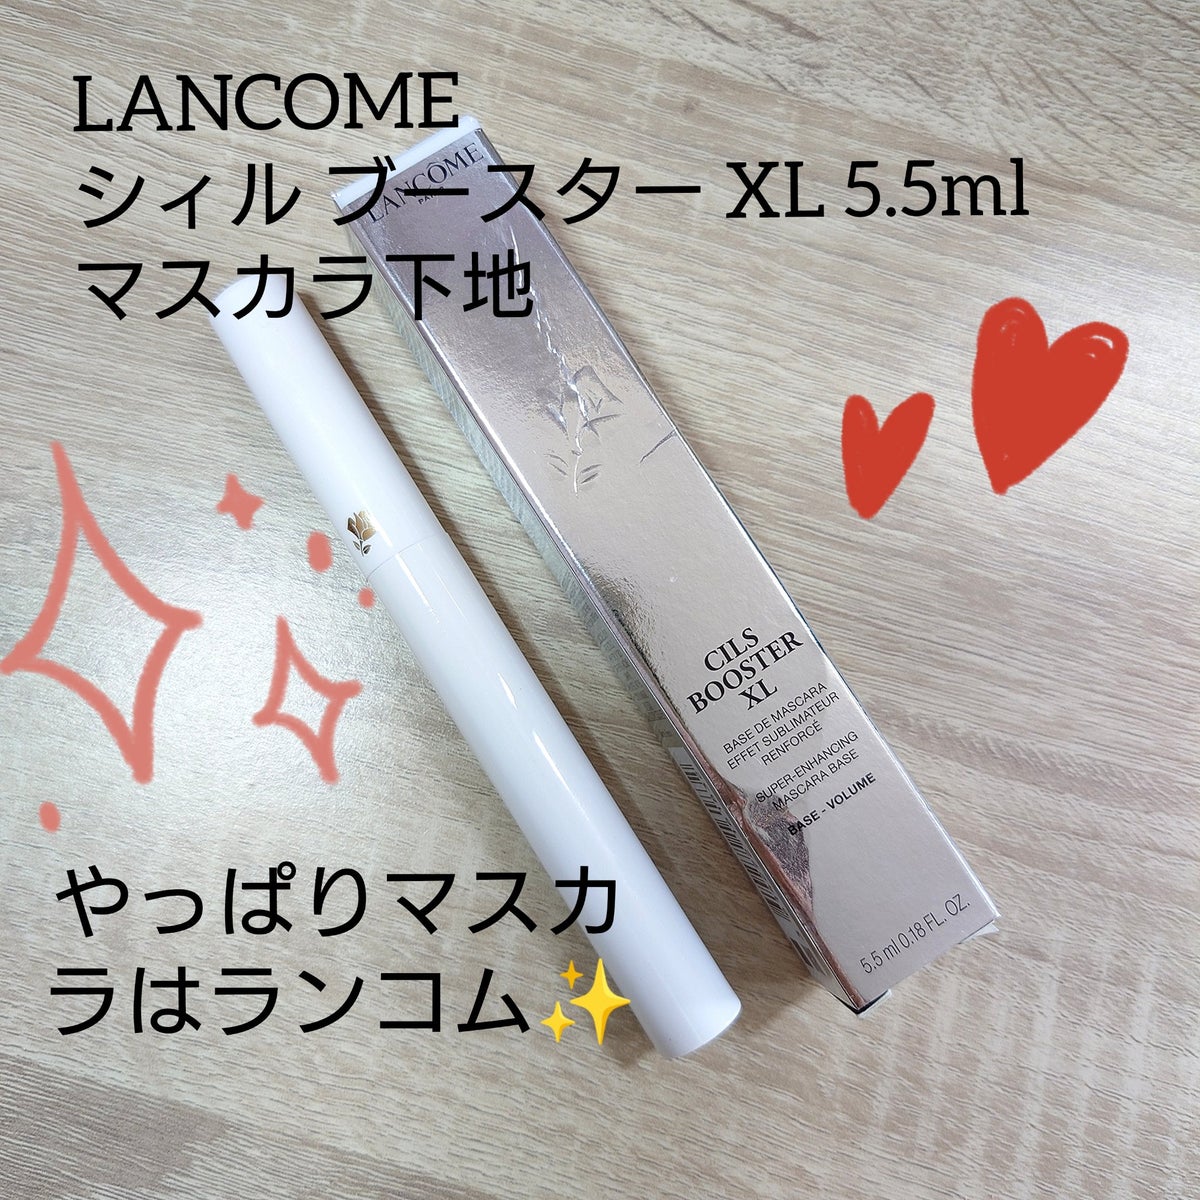 ランコム シィル ブースター XL 5.5ml - まつ毛美容液